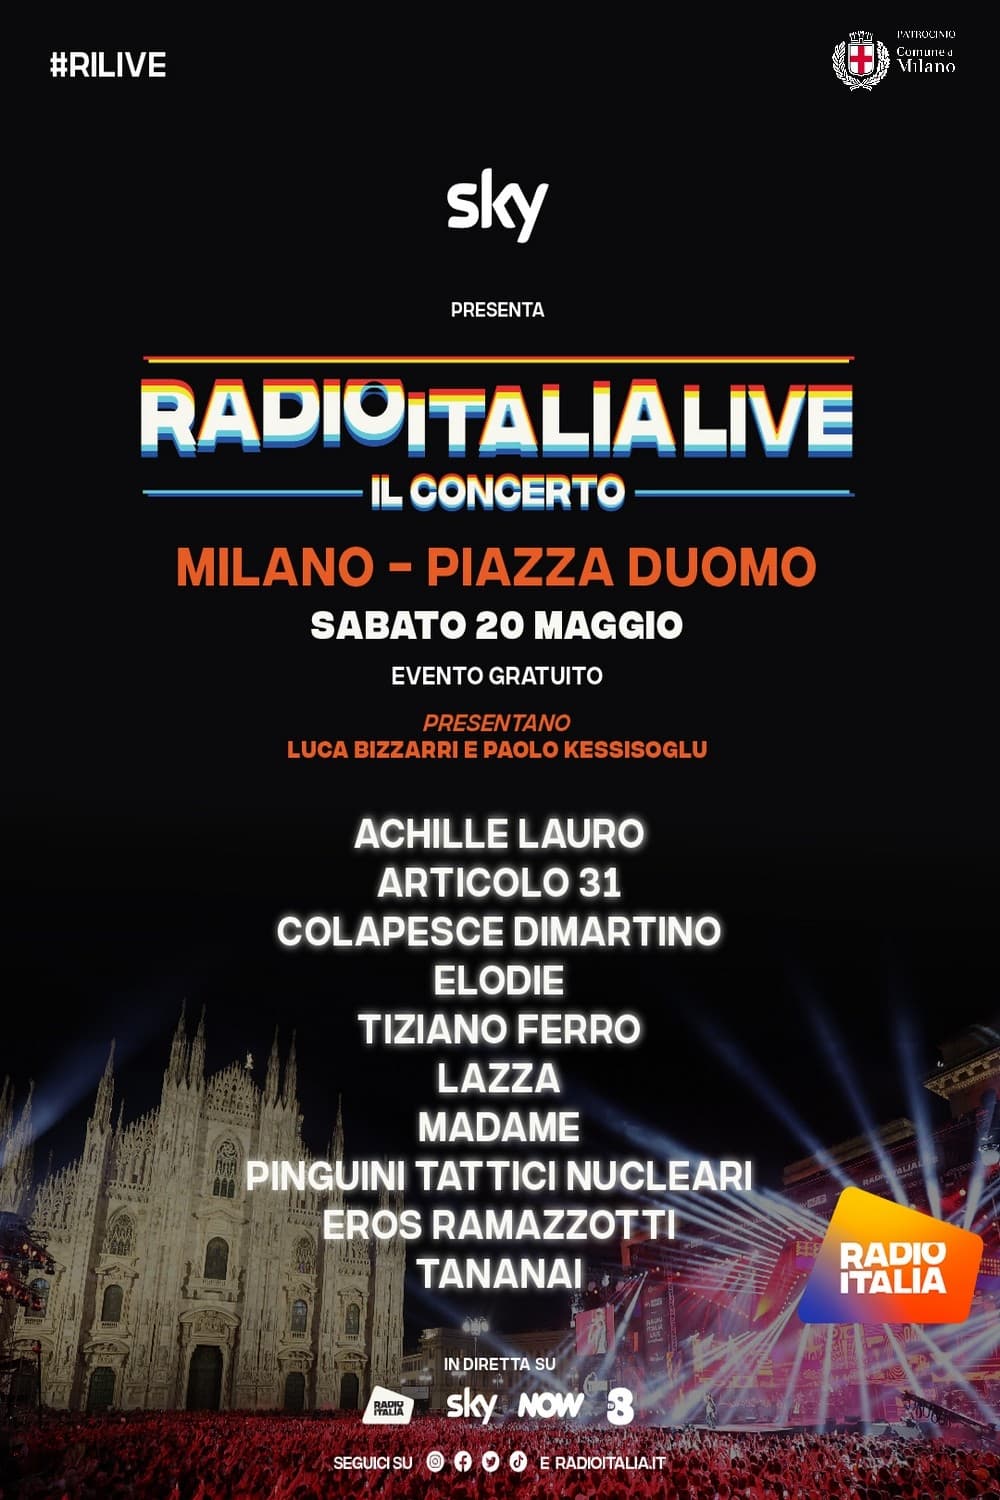 RadioItaliaLive Il concerto 2023